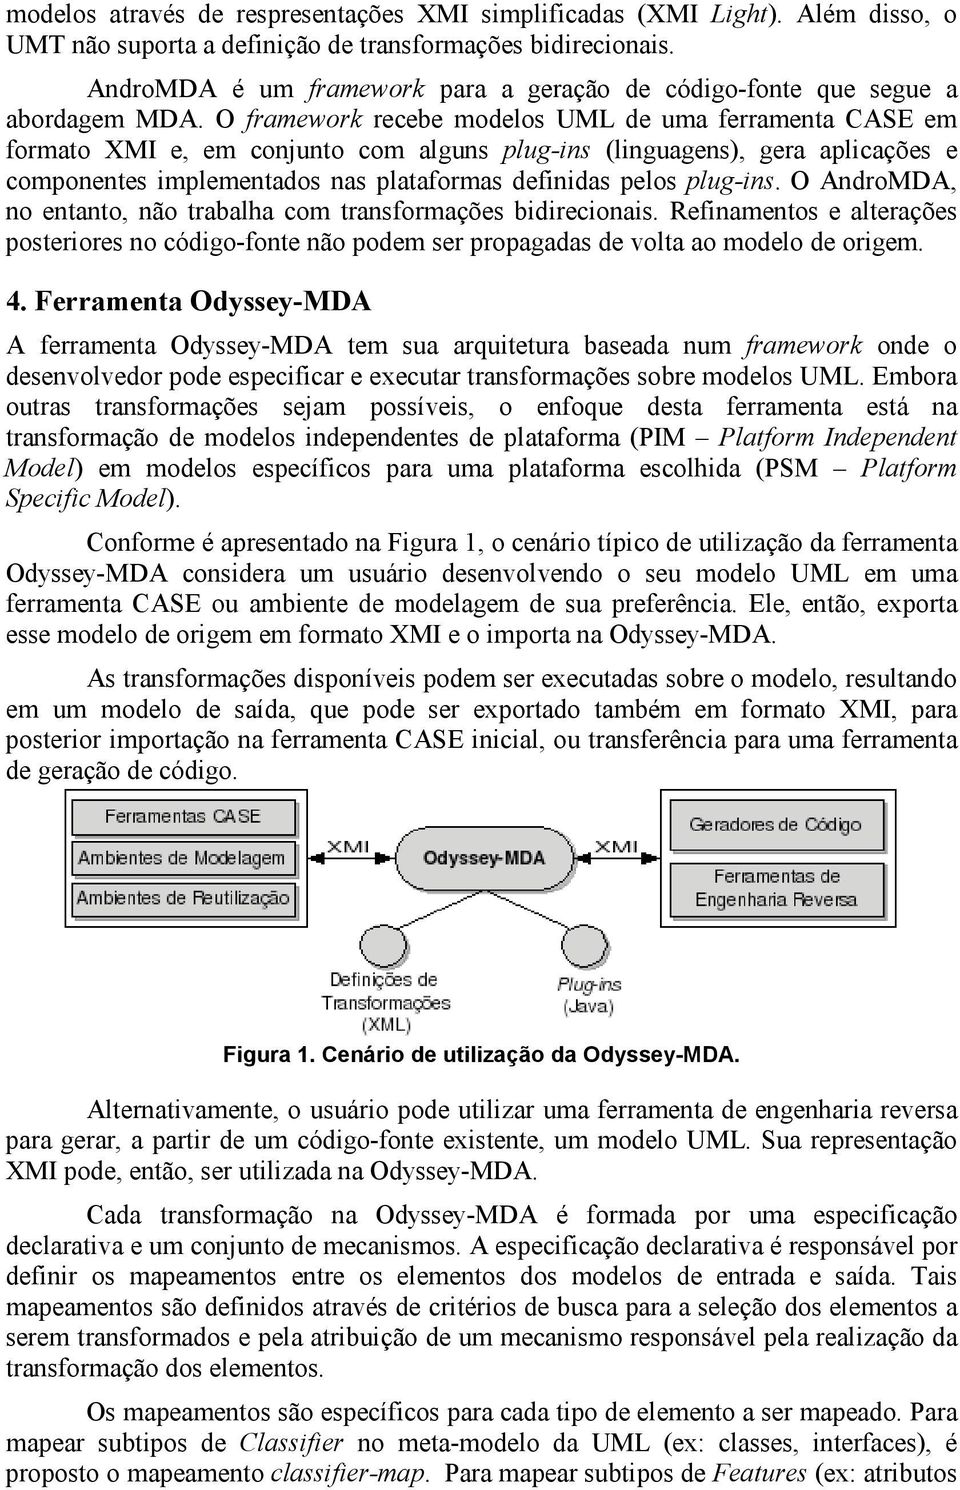 O framework recebe modelos UML de uma ferramenta CASE em formato XMI e, em conjunto com alguns plug-ins (linguagens), gera aplicações e componentes implementados nas plataformas definidas pelos